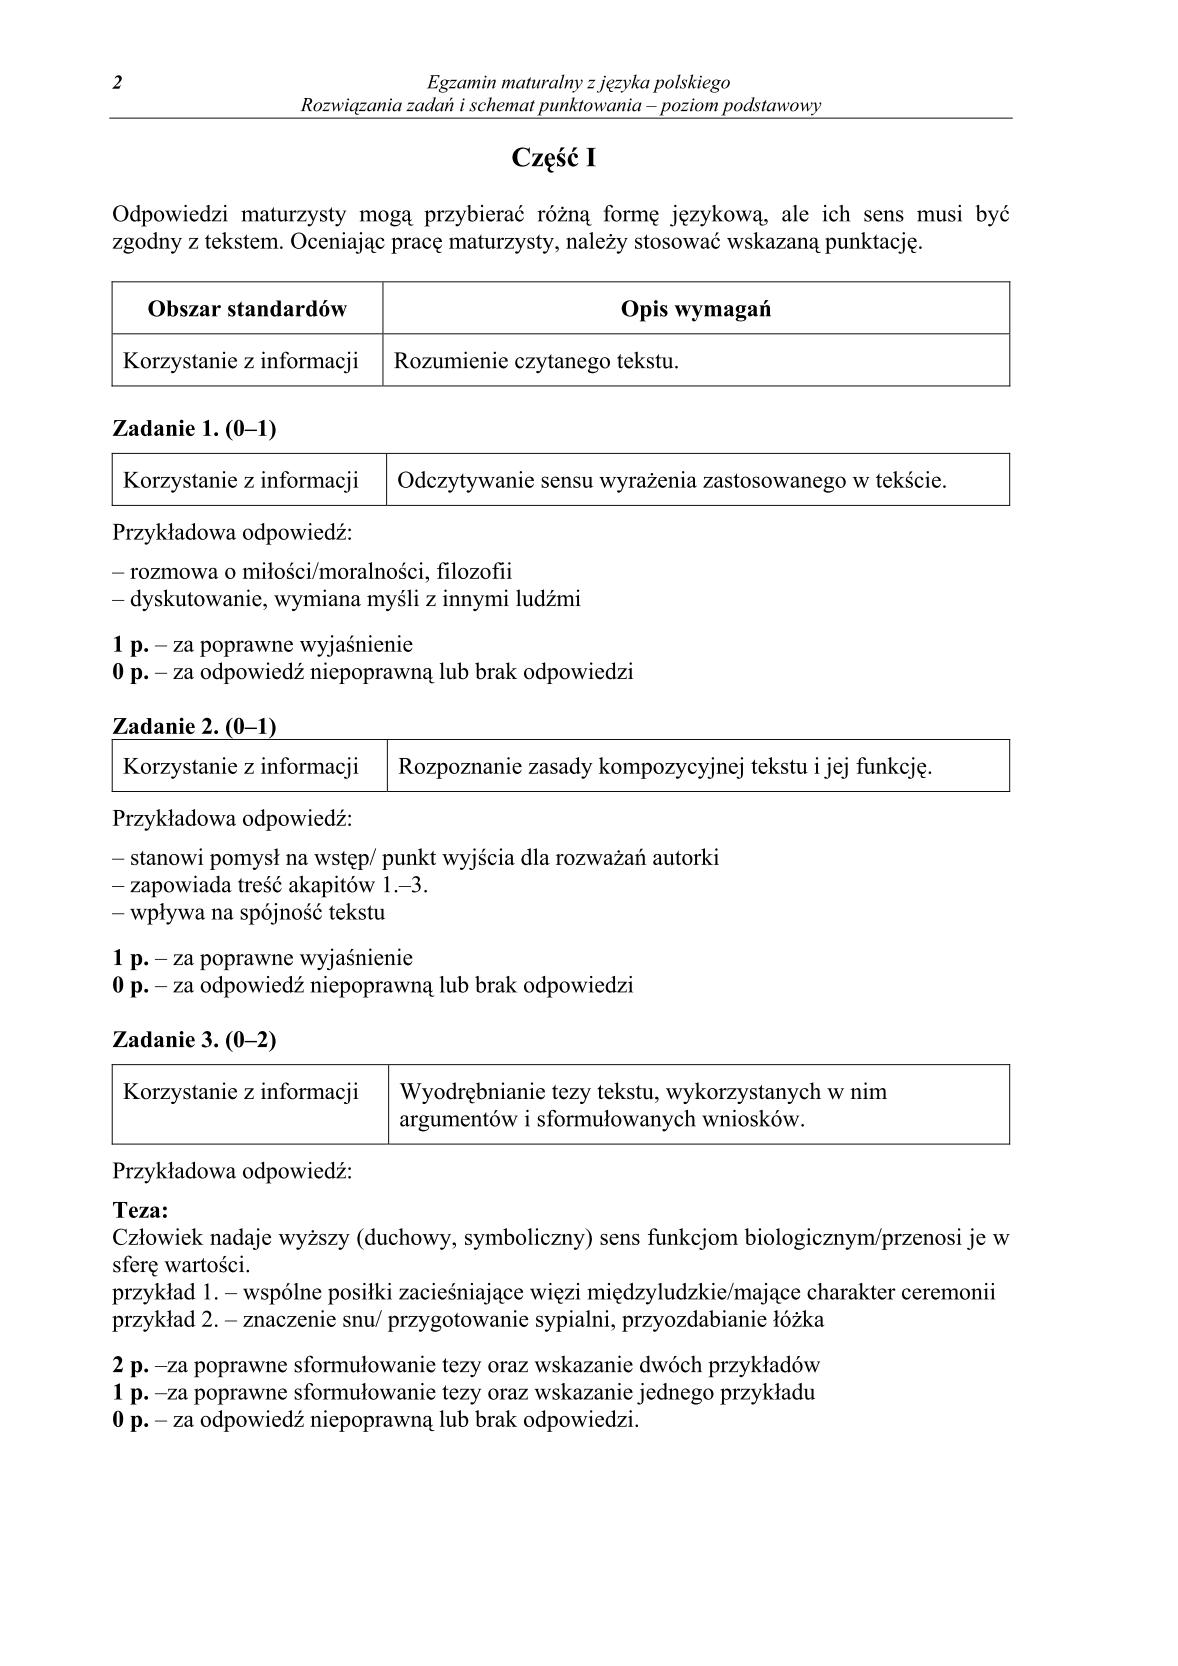 odpowiedzi-jezyk-polski-poziom-podstawowy-matura-2014-str.2